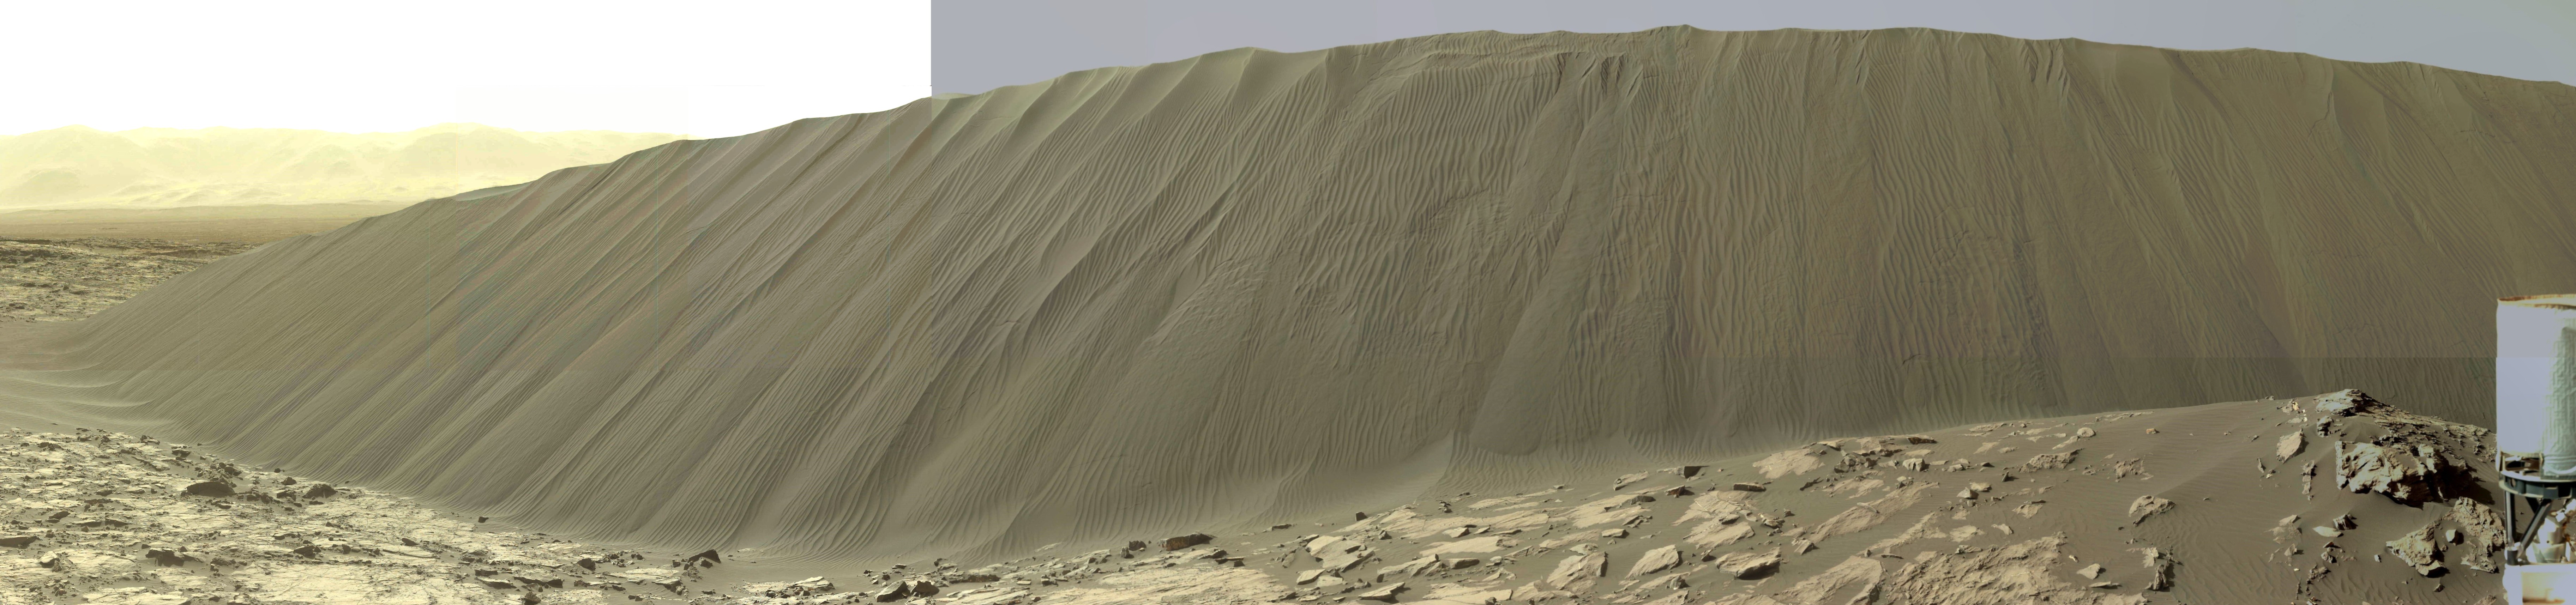 15 12 19 dune Namib complète